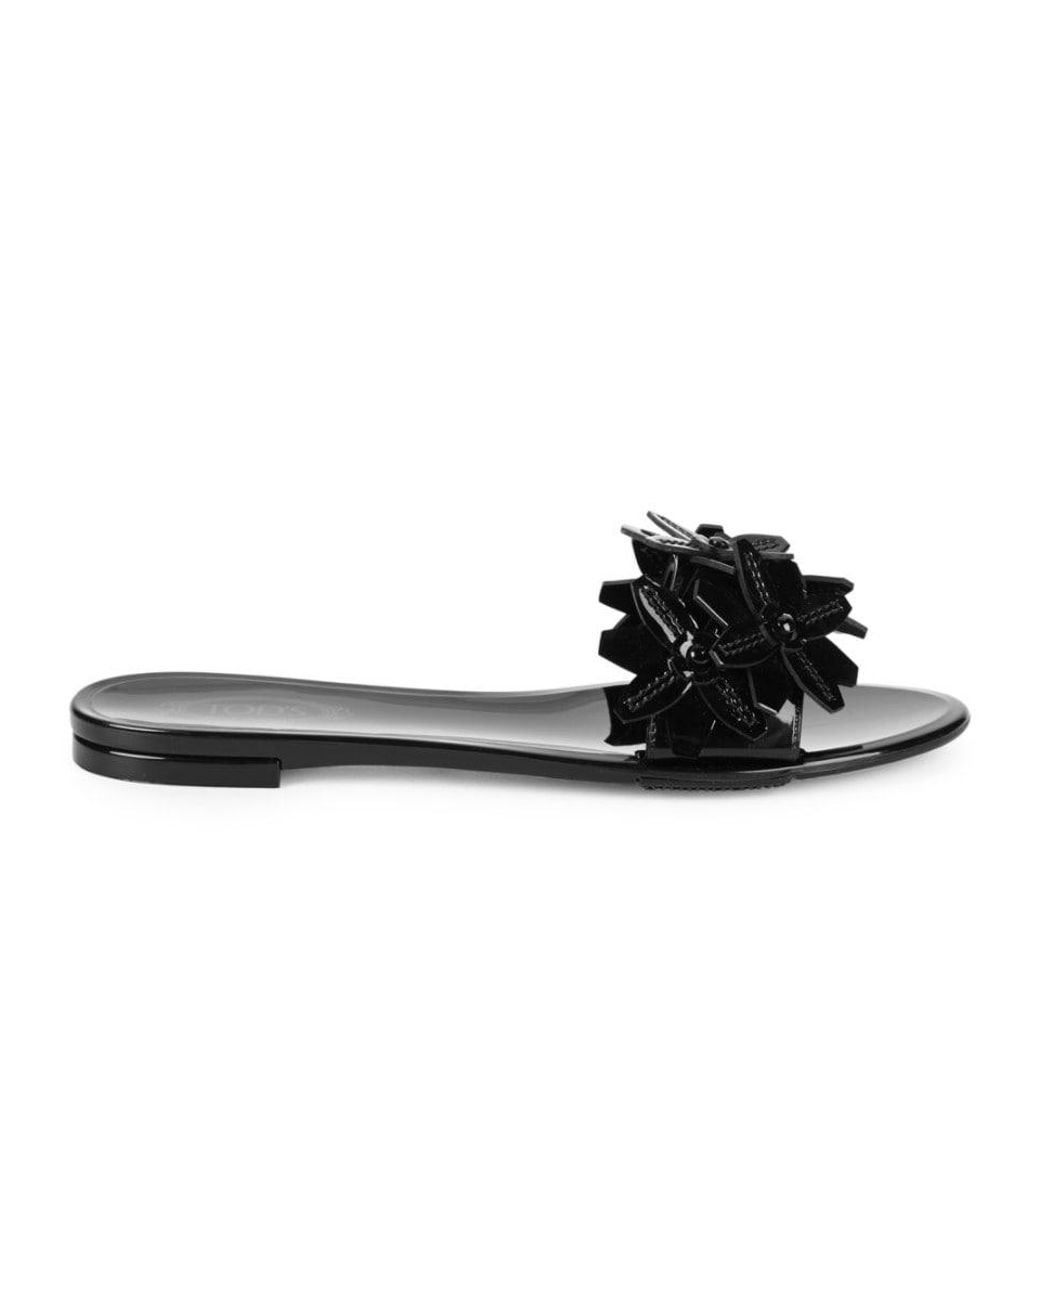 Tod's Women's Floral Embellished Patent Slides - Black - Size 35 (5) Sandals  | Lyst